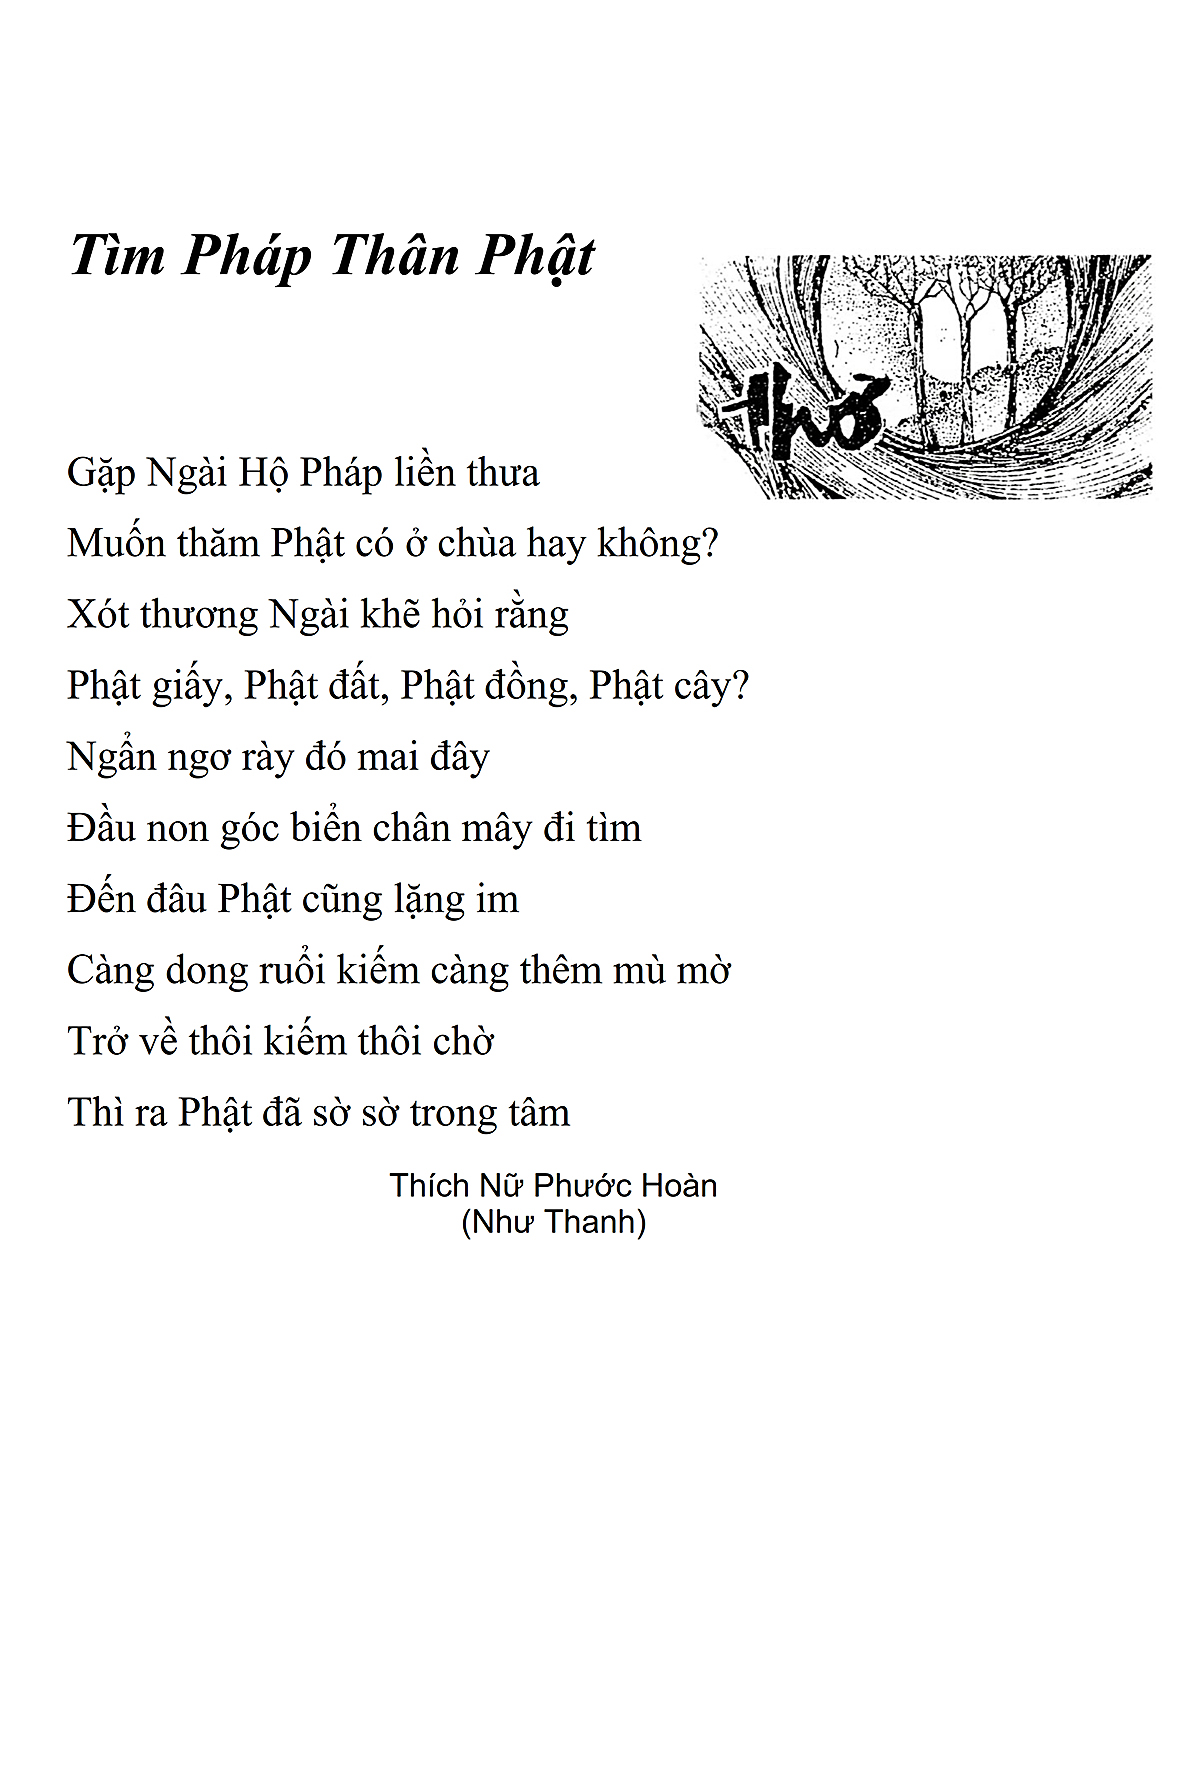 Tim Phap Than Phat